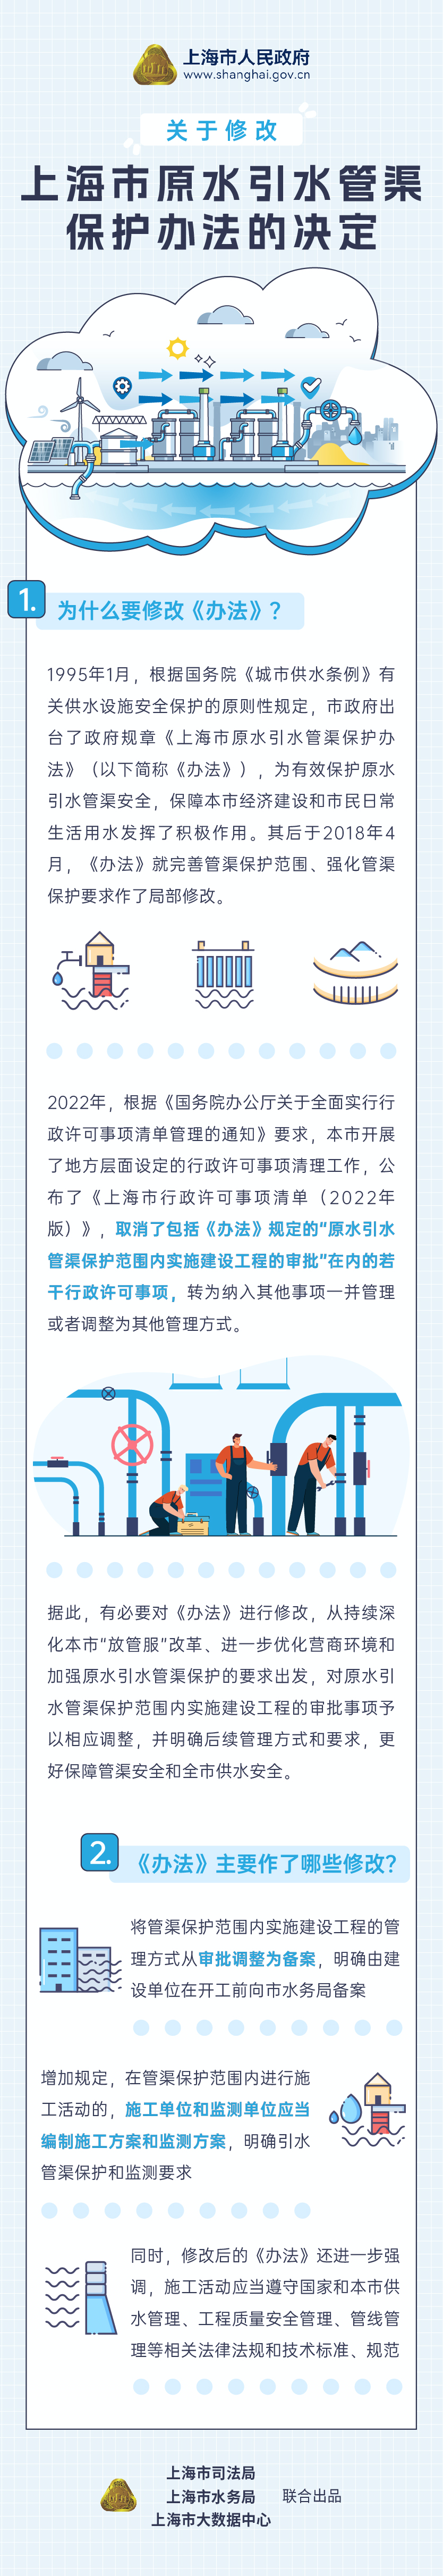 《关于修改上海市原水引水管渠保护办法的决定》图解.png